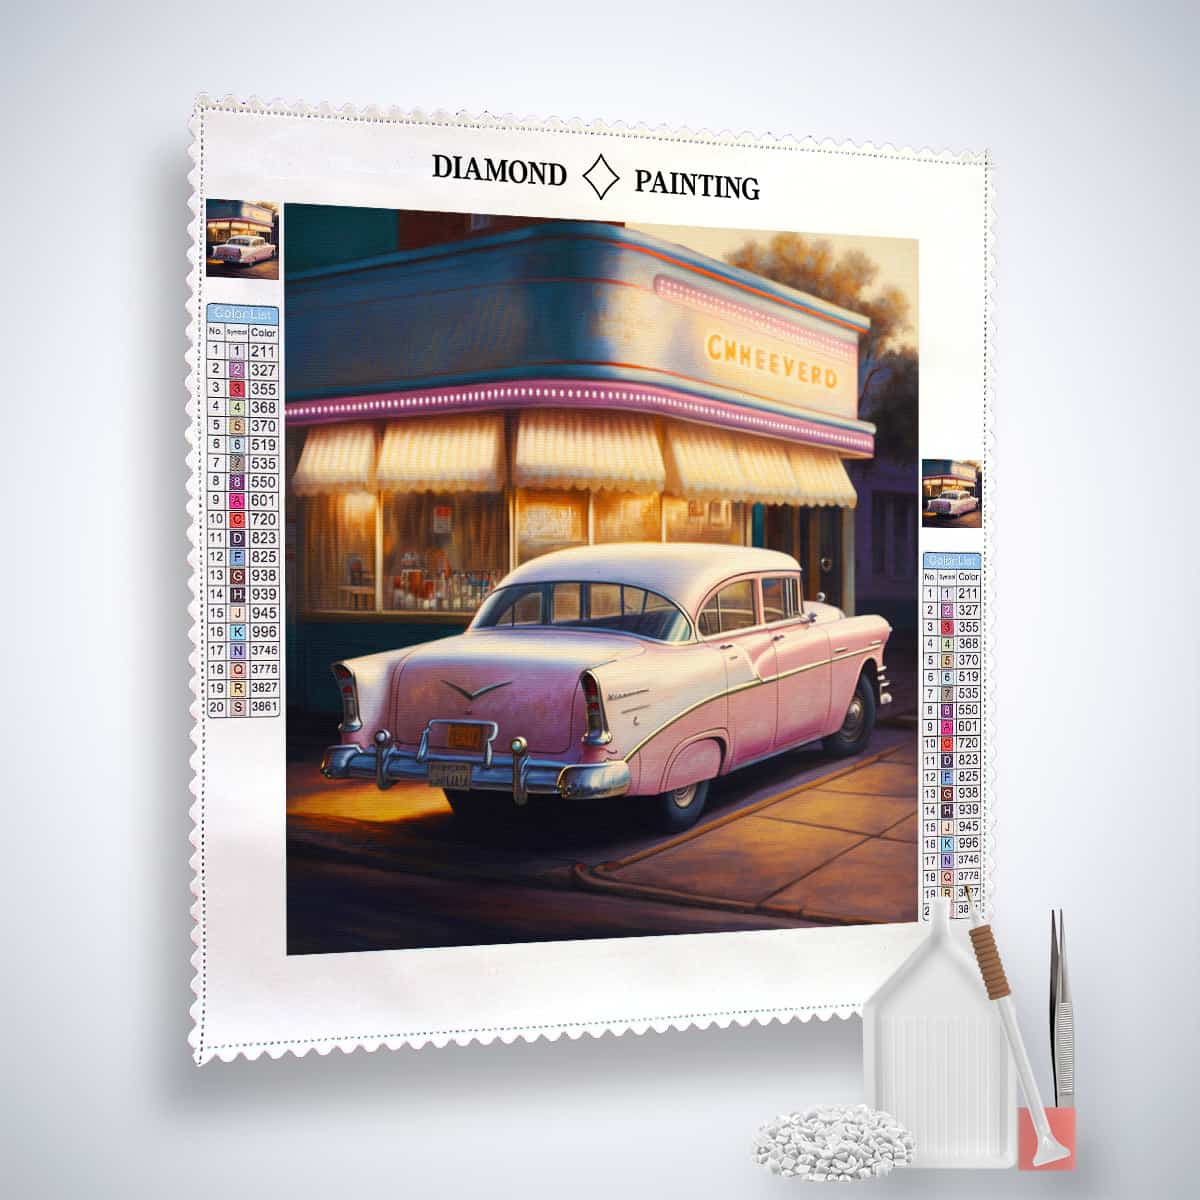 Diamond Painting - Tankstellen-Romantik der 50er - gedruckt in Ultra-HD - Auto, Neu eingetroffen, Quadratisch, Retro, Route 66